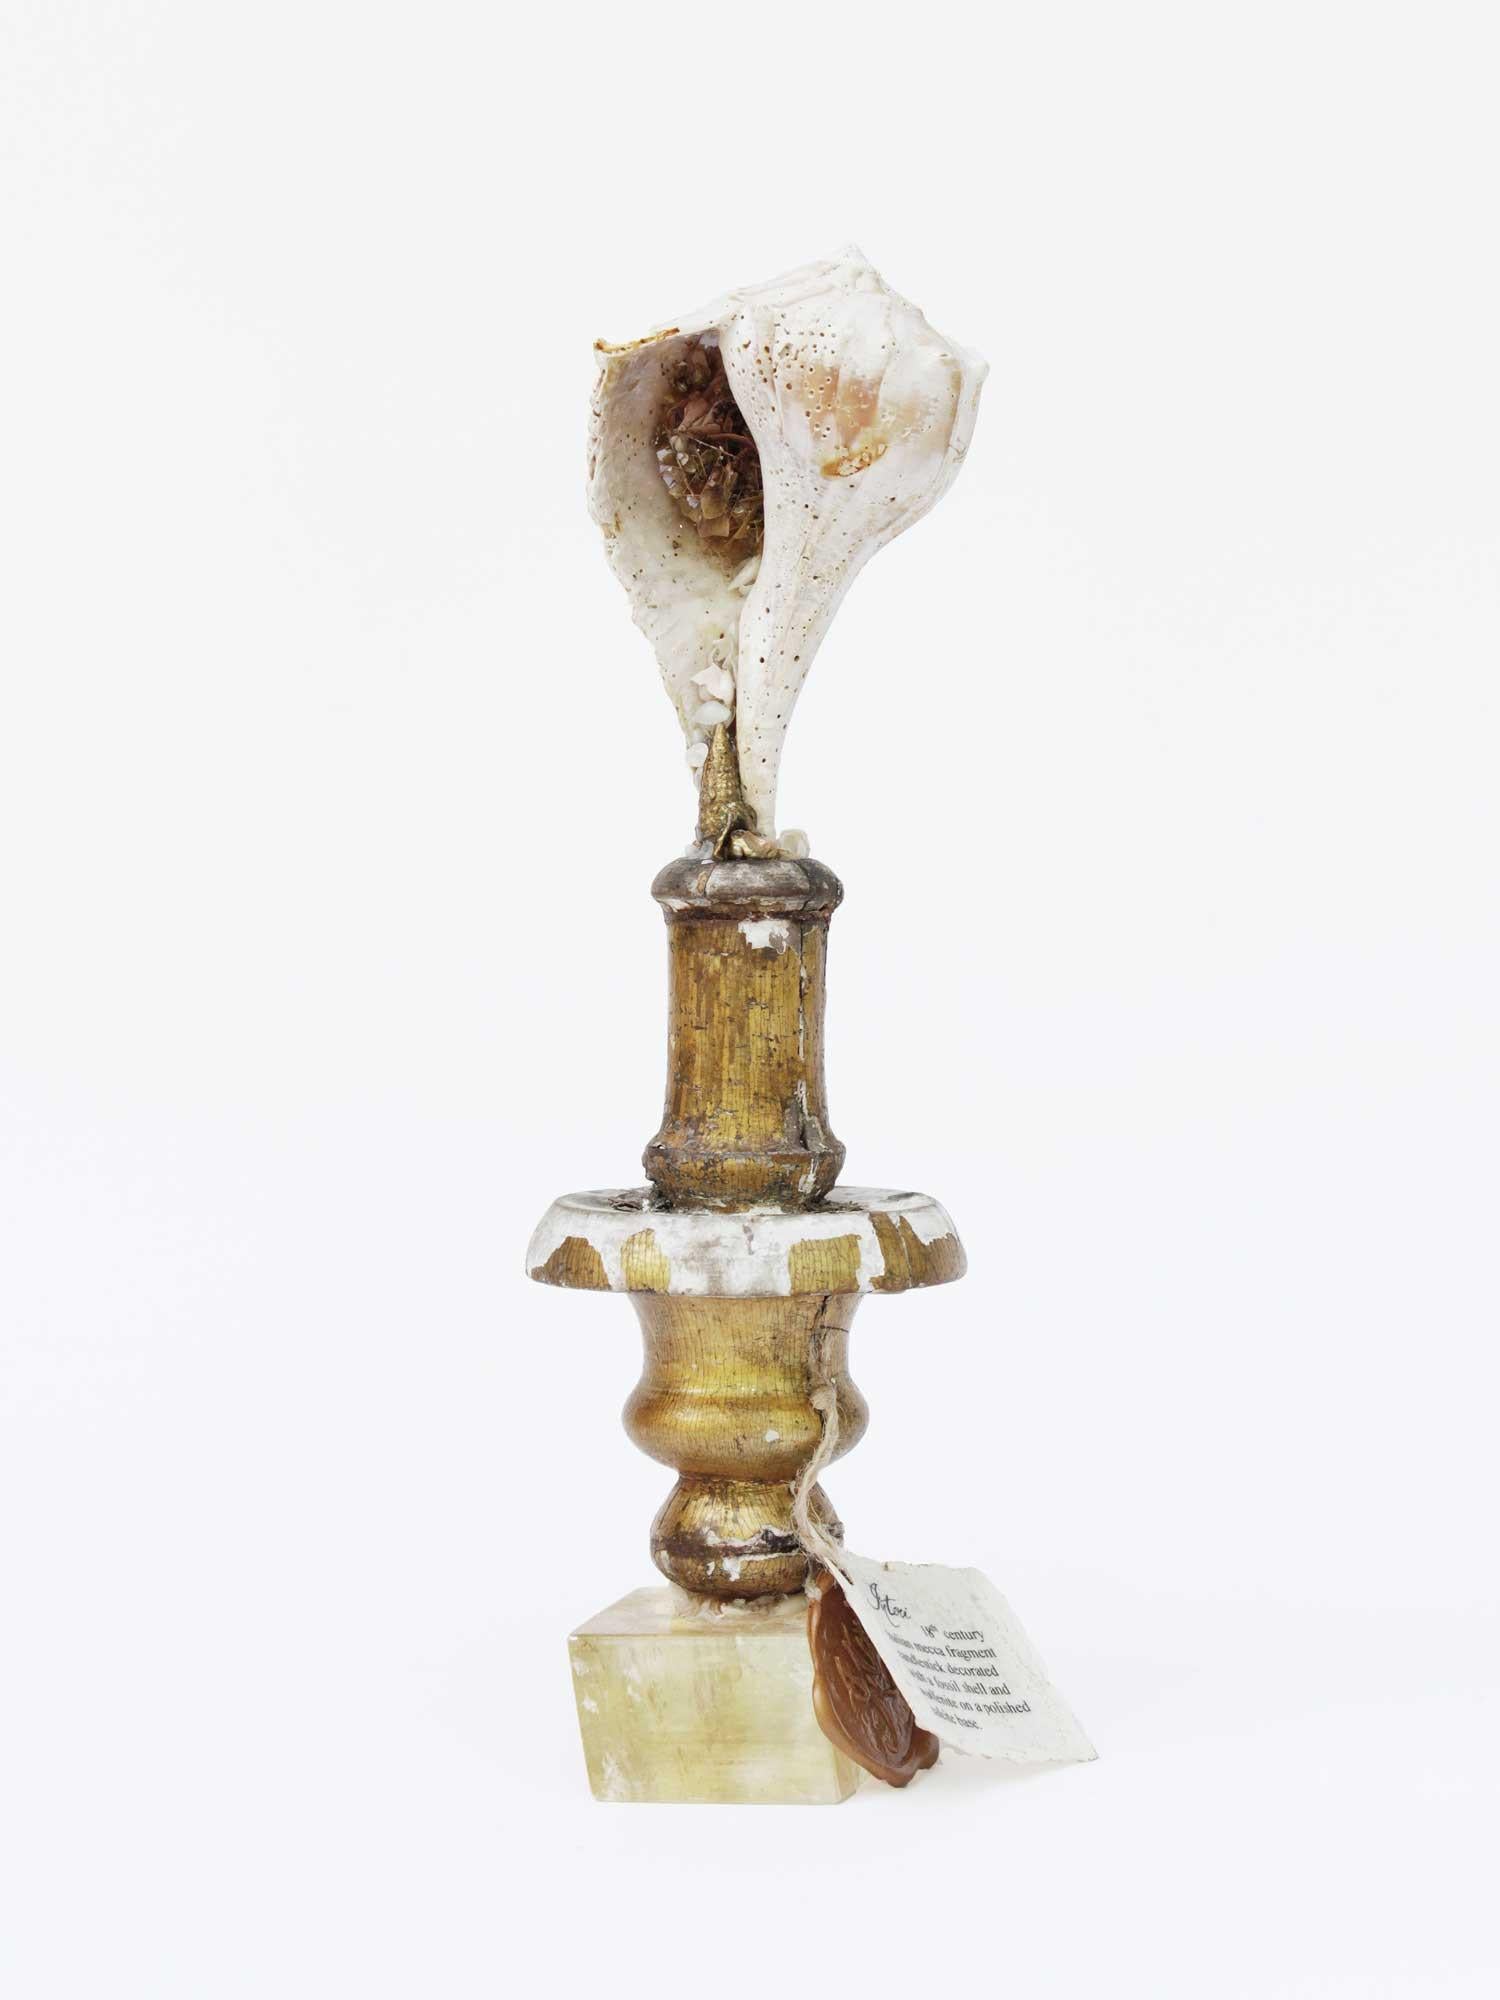 Skulpturaler italienischer Mekka-Fragment-Leuchter aus dem 18. Jahrhundert mit einer fossilen Muschel und Wulfenit auf einem polierten Calcit-Sockel.

Das Fragment war ursprünglich Teil eines italienischen Kerzenständers aus einer historischen